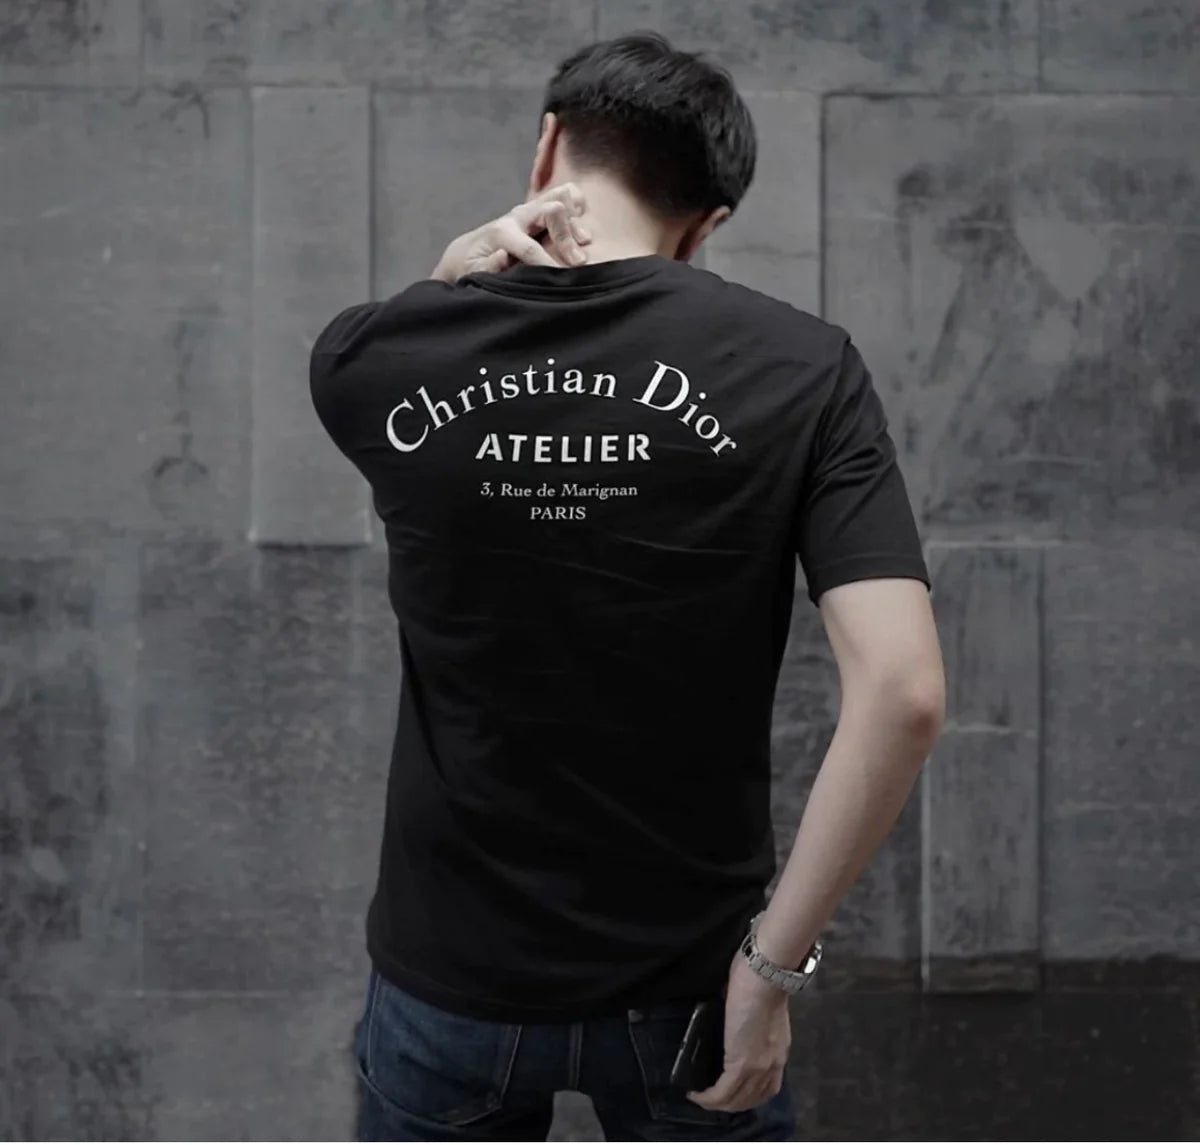 Christian Dior ATELIER T-shirt size:M | nate-hospital.com